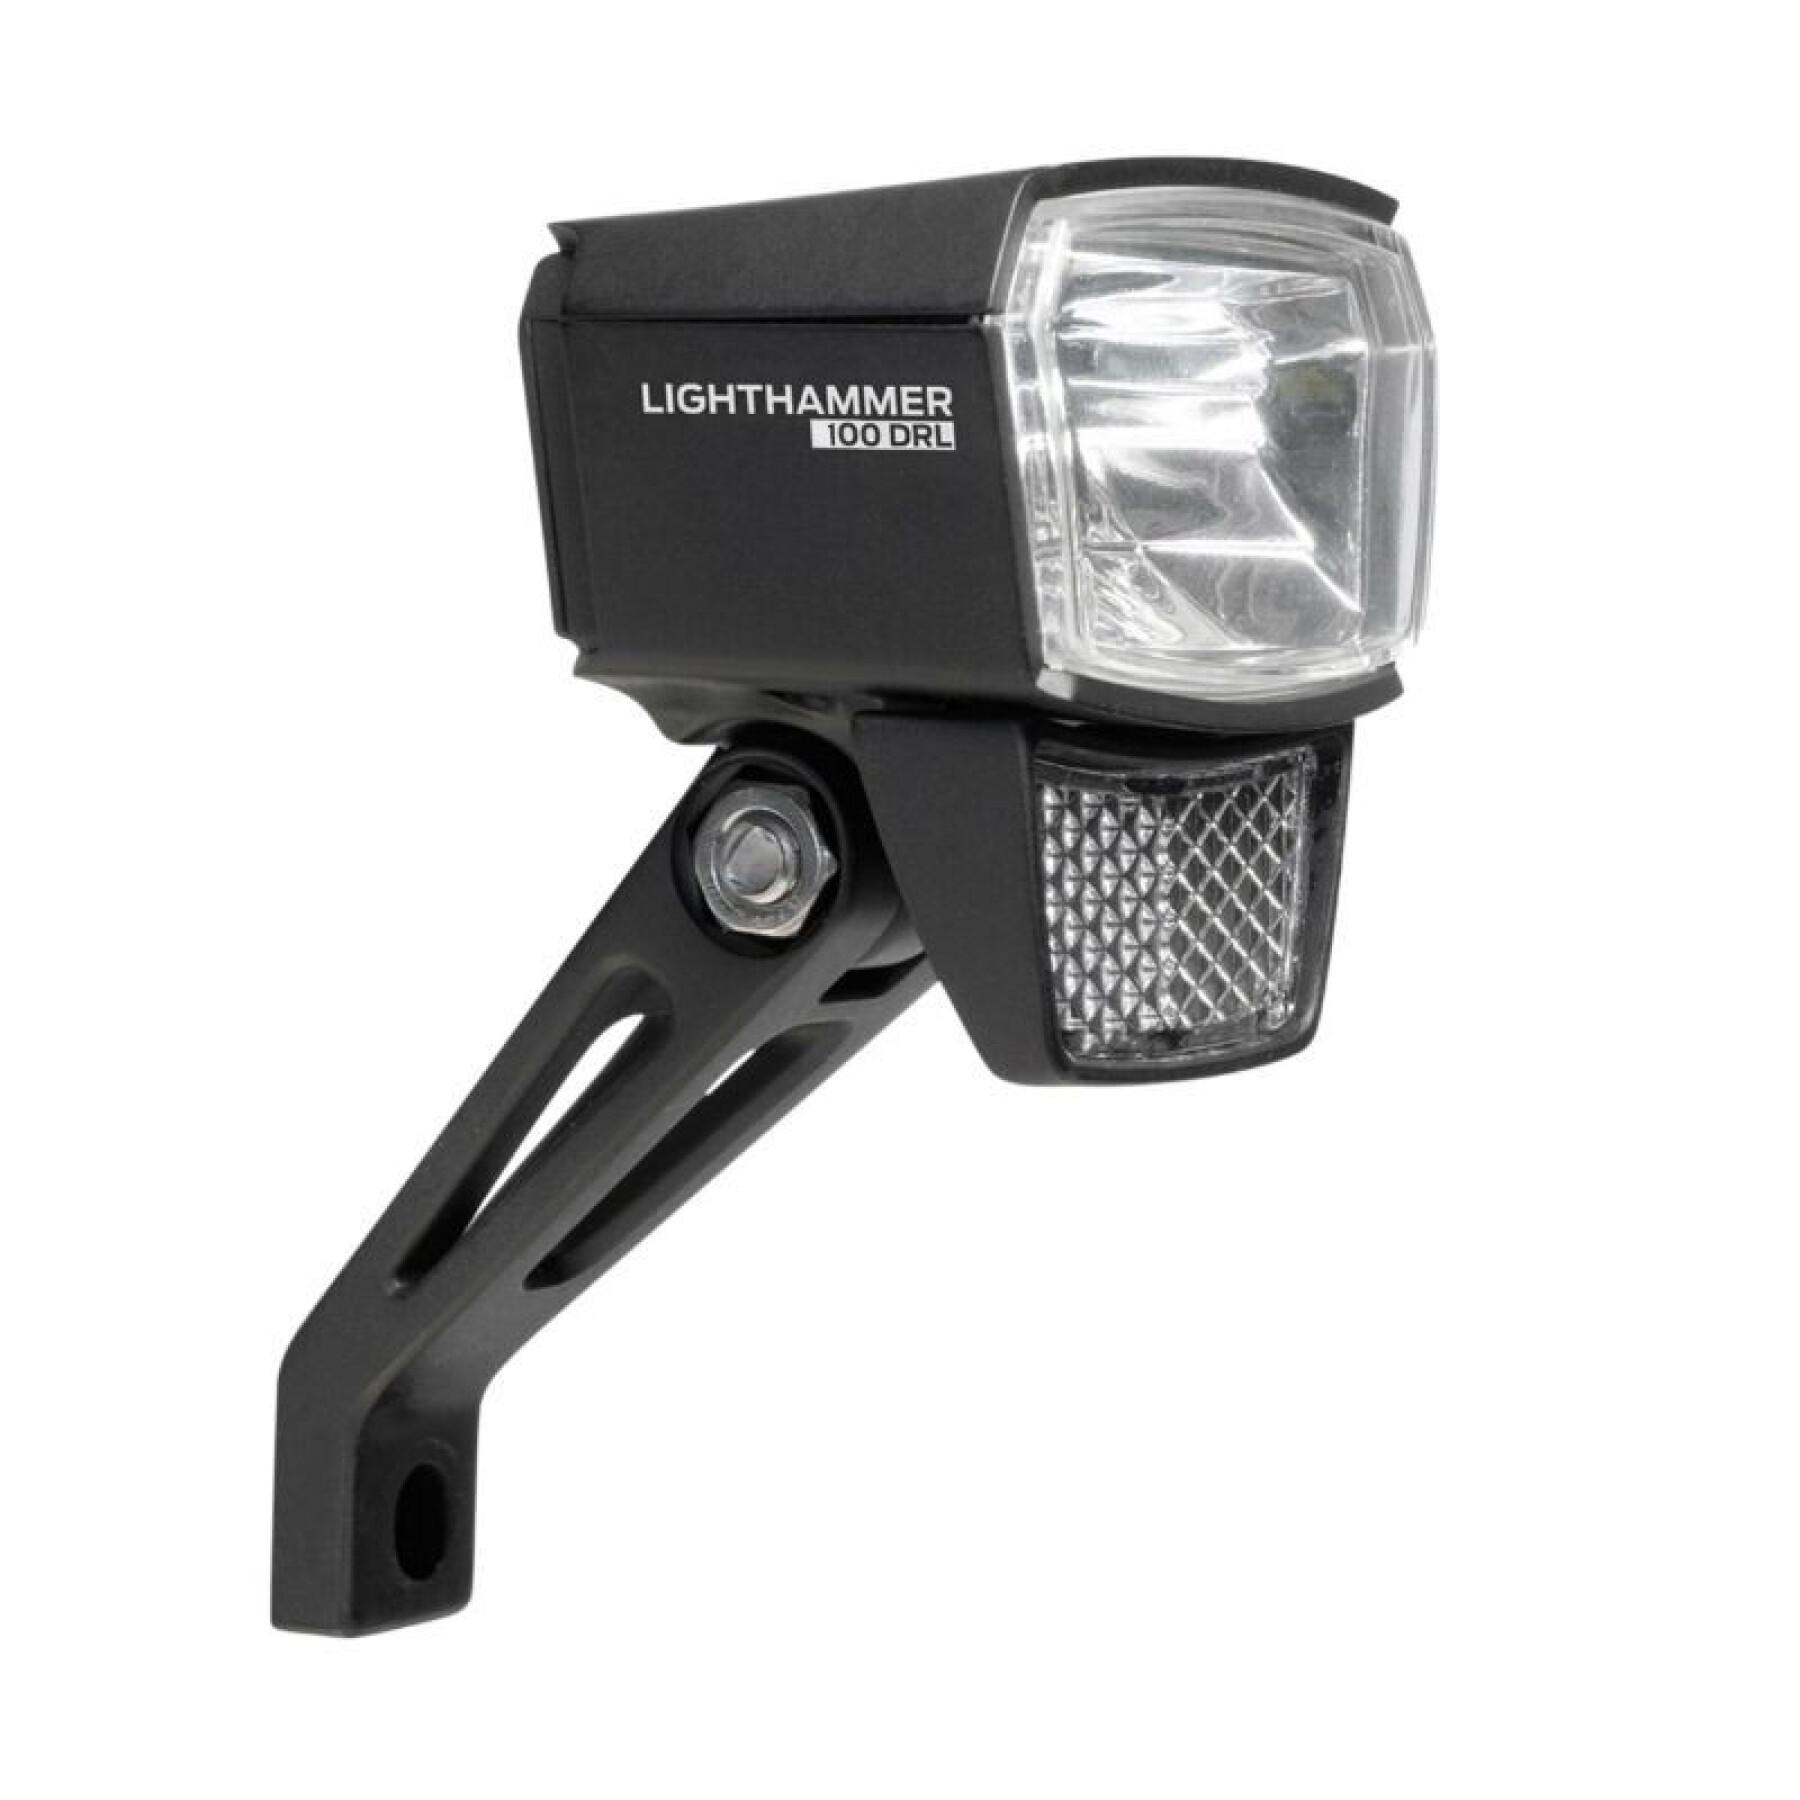 iluminación de la horquilla delantera Trelock E-Bike Trelock Ls890 6-12V 100 Lux